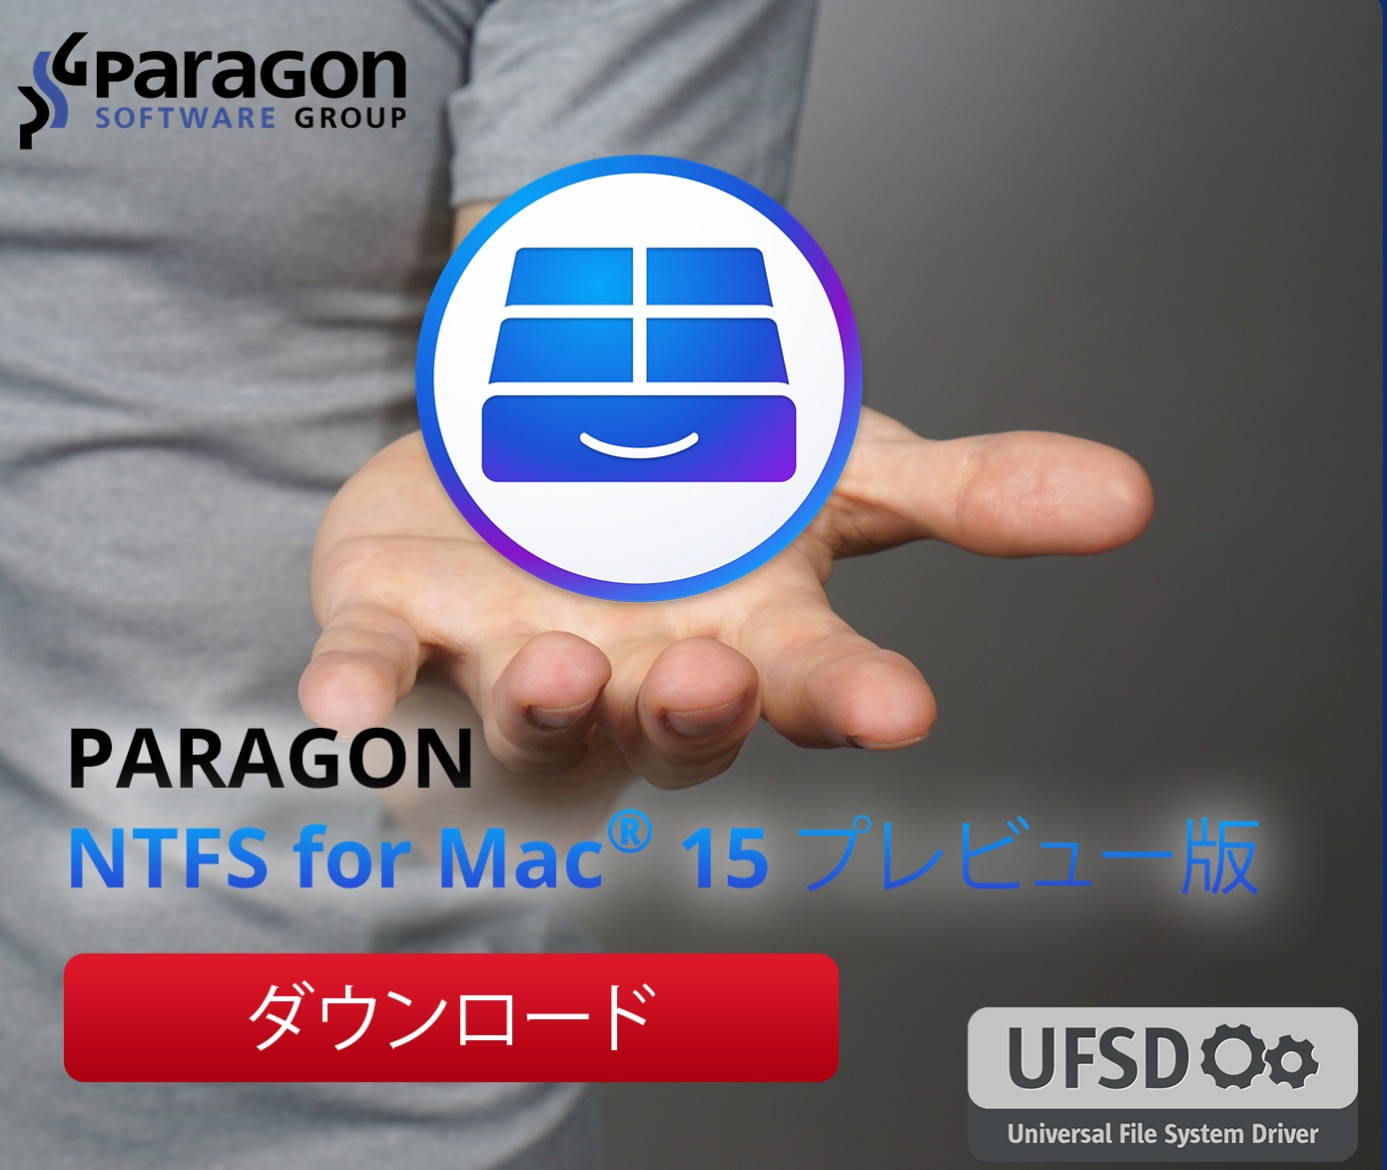 新Paragon NTFSのプレビュー版、「Paragon NTFS for Mac 15 Preview」を試してみた！